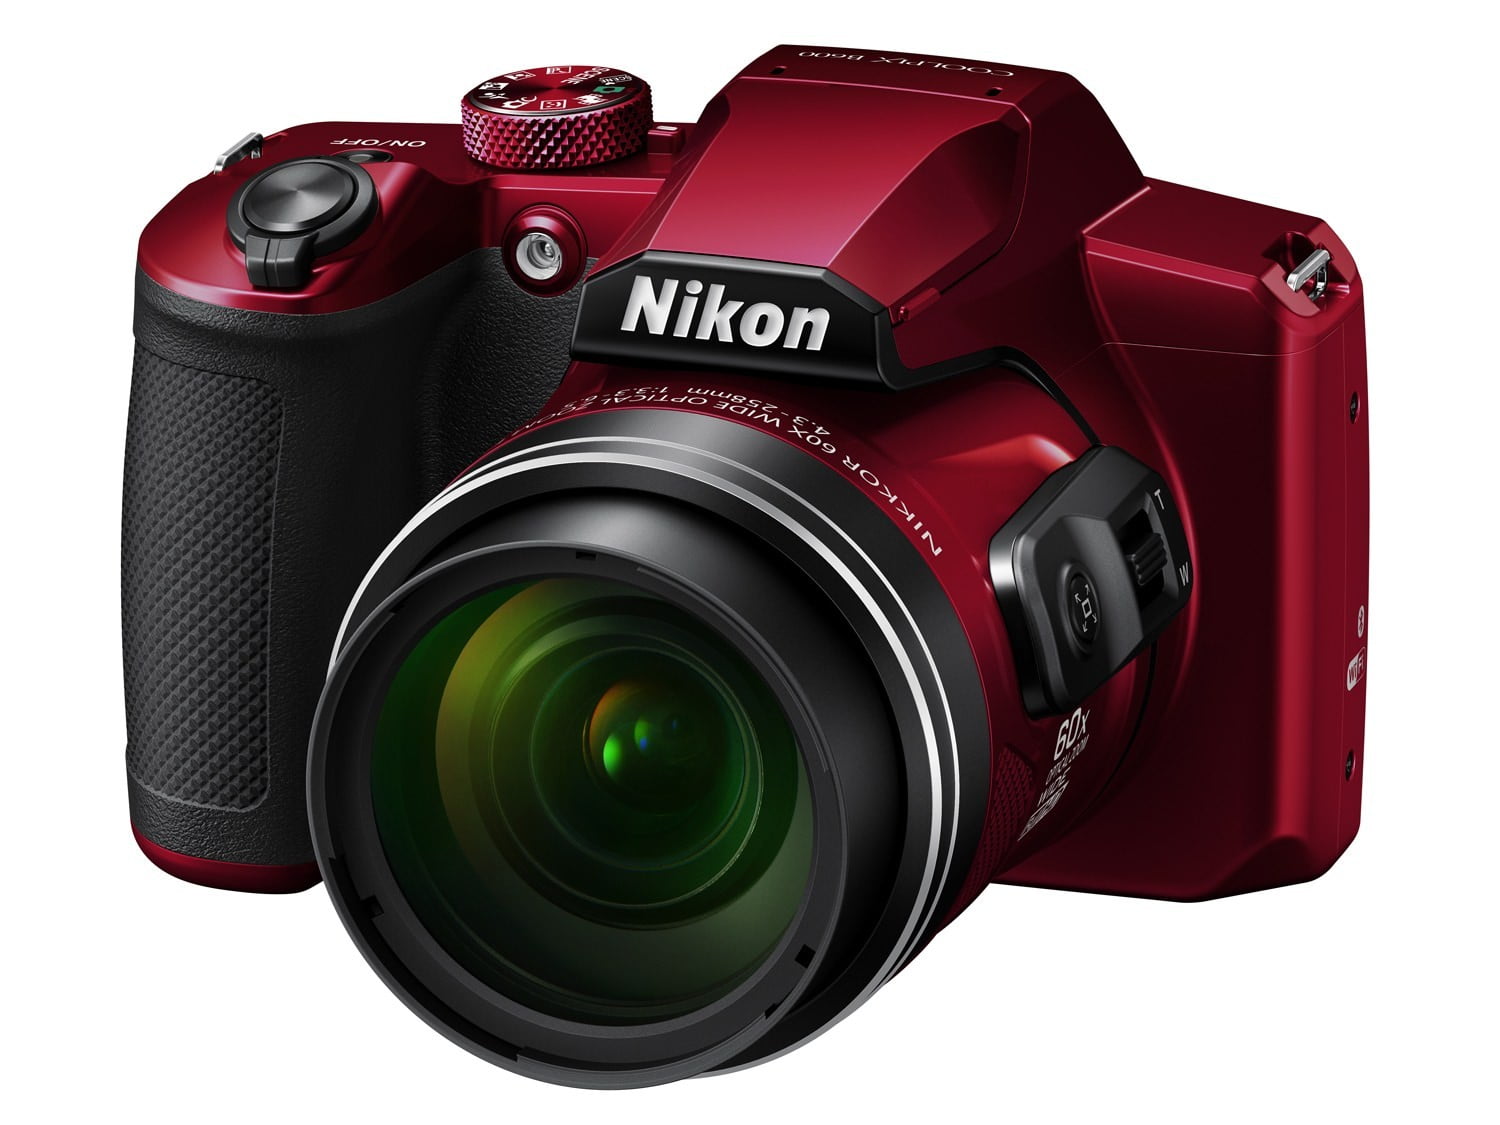 Nikon COOLPIX B600 Digital Camera (Red) VQA091EA - Walmart.com